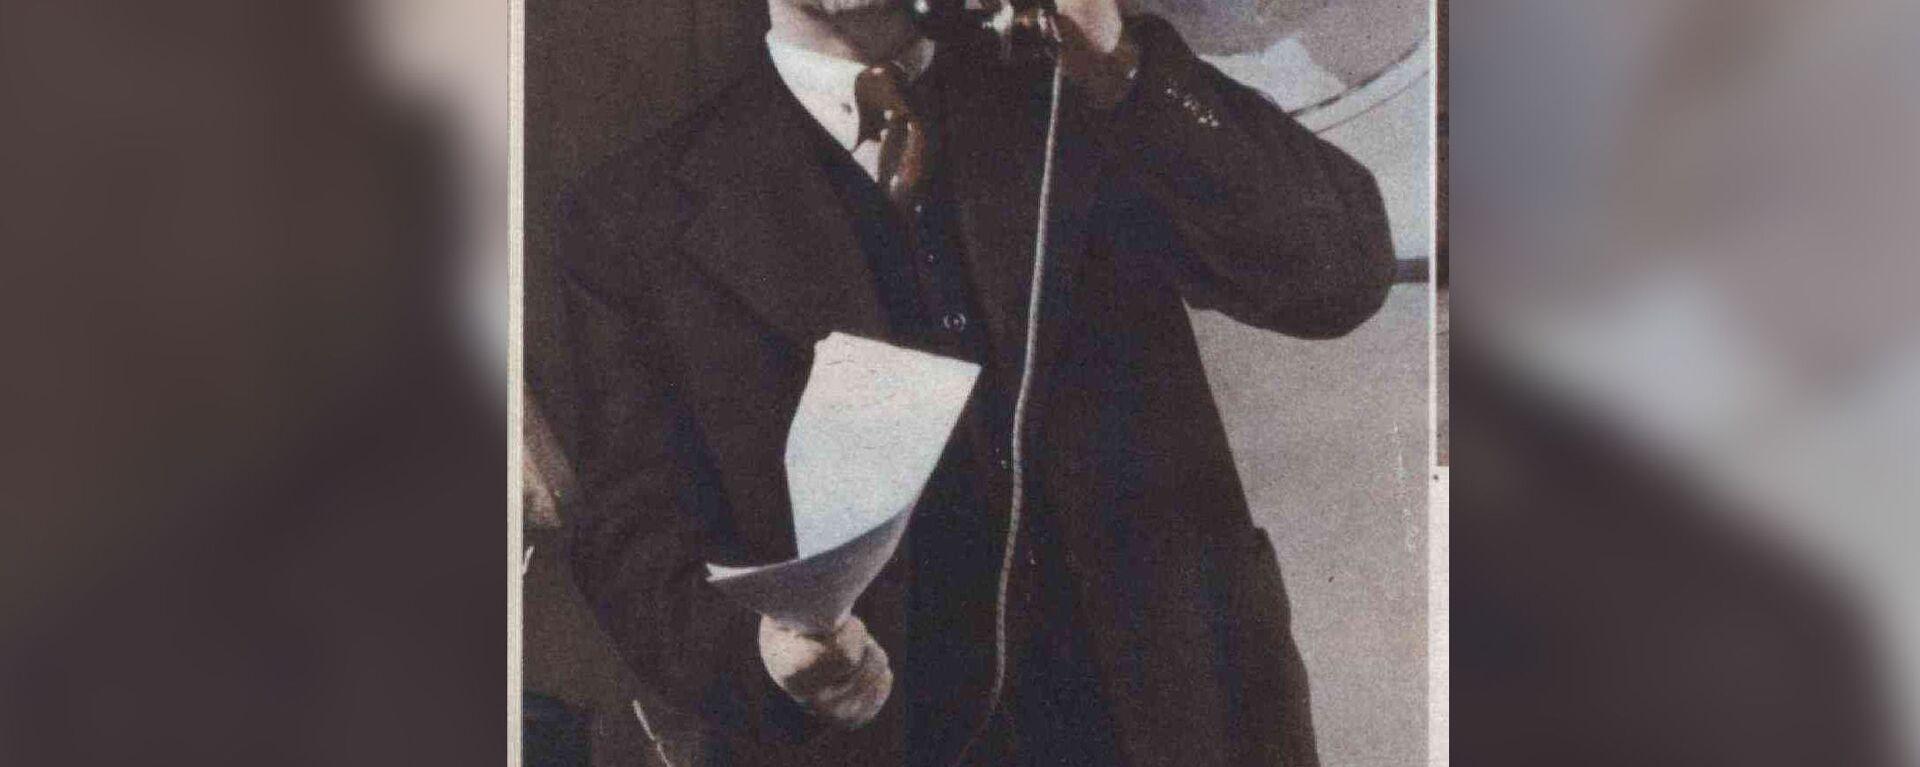 Рихардс Зандерсонс в роли Ленина - Sputnik Латвия, 1920, 22.04.2020